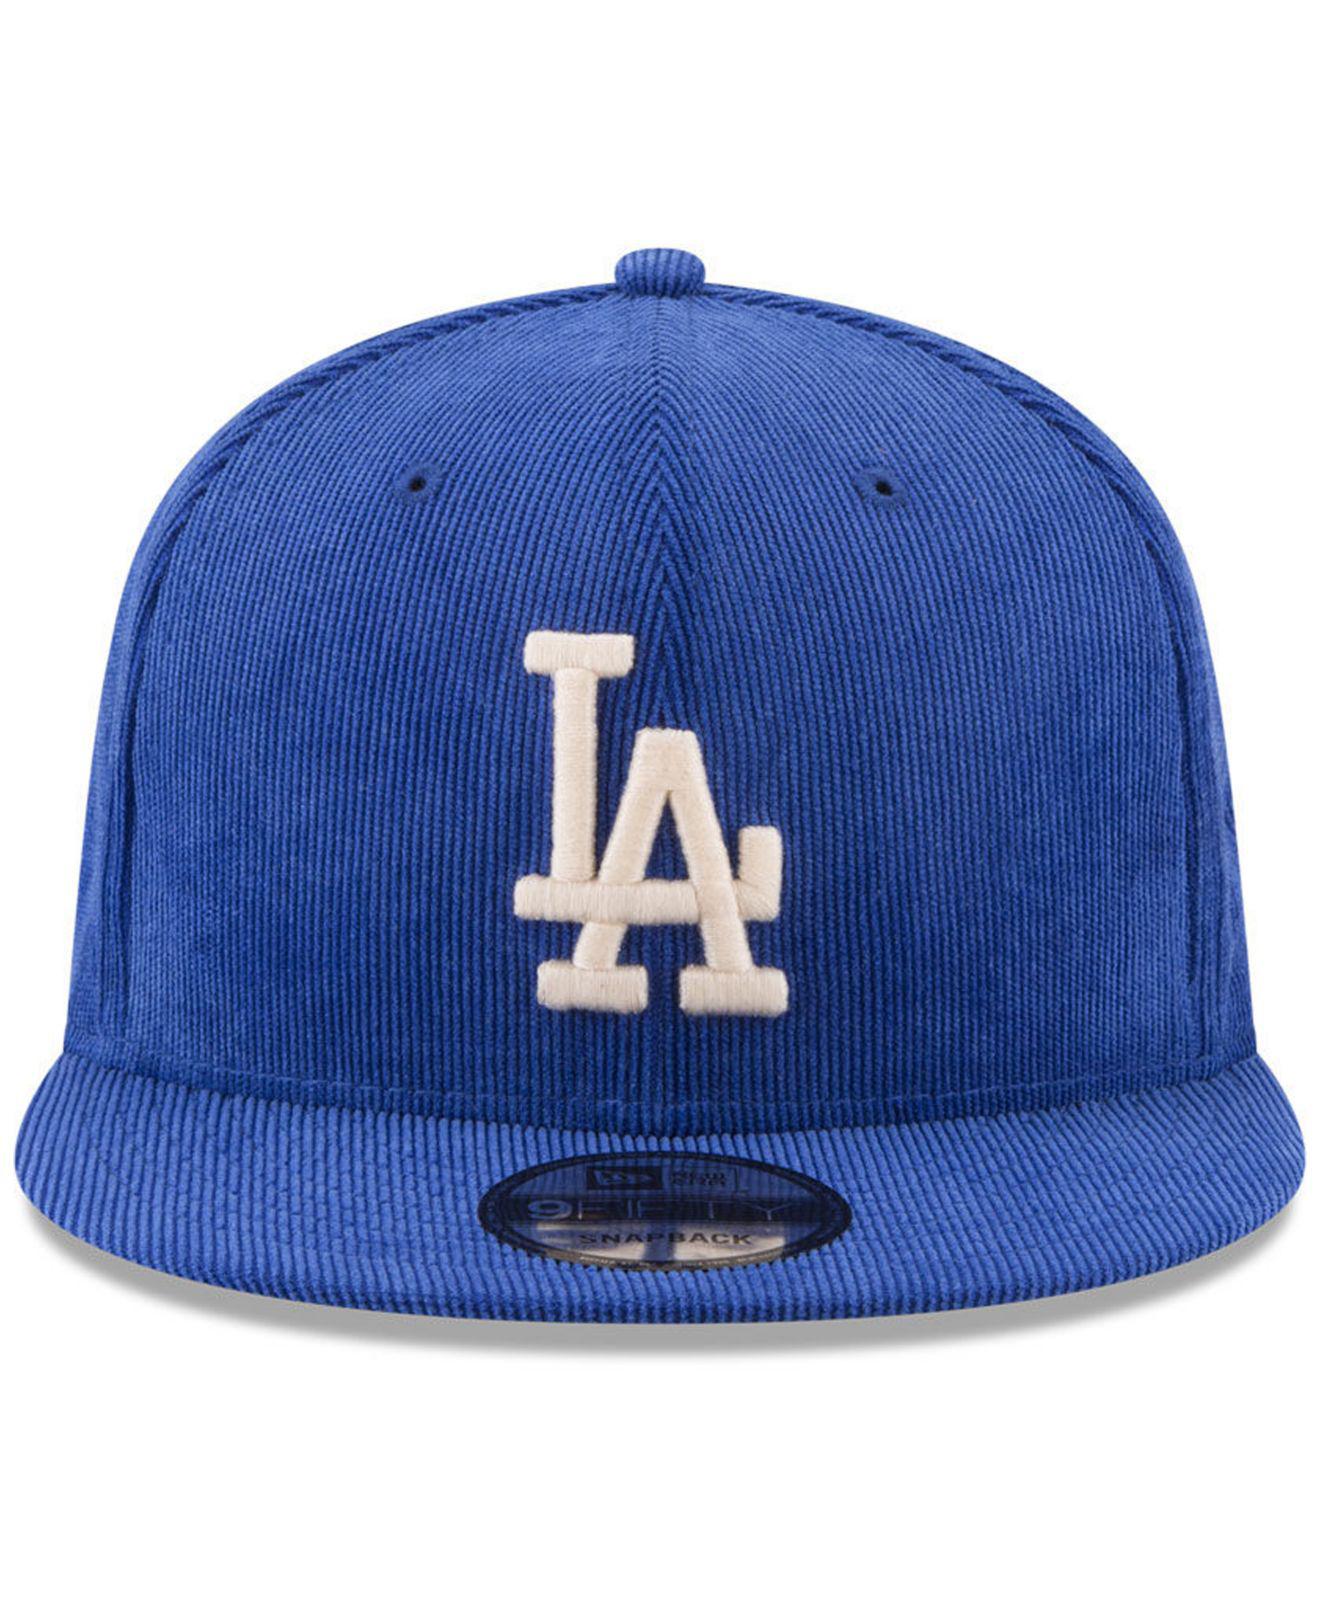 LA Dodgers navy New Era 9Fifty Snapback CORD Cap 